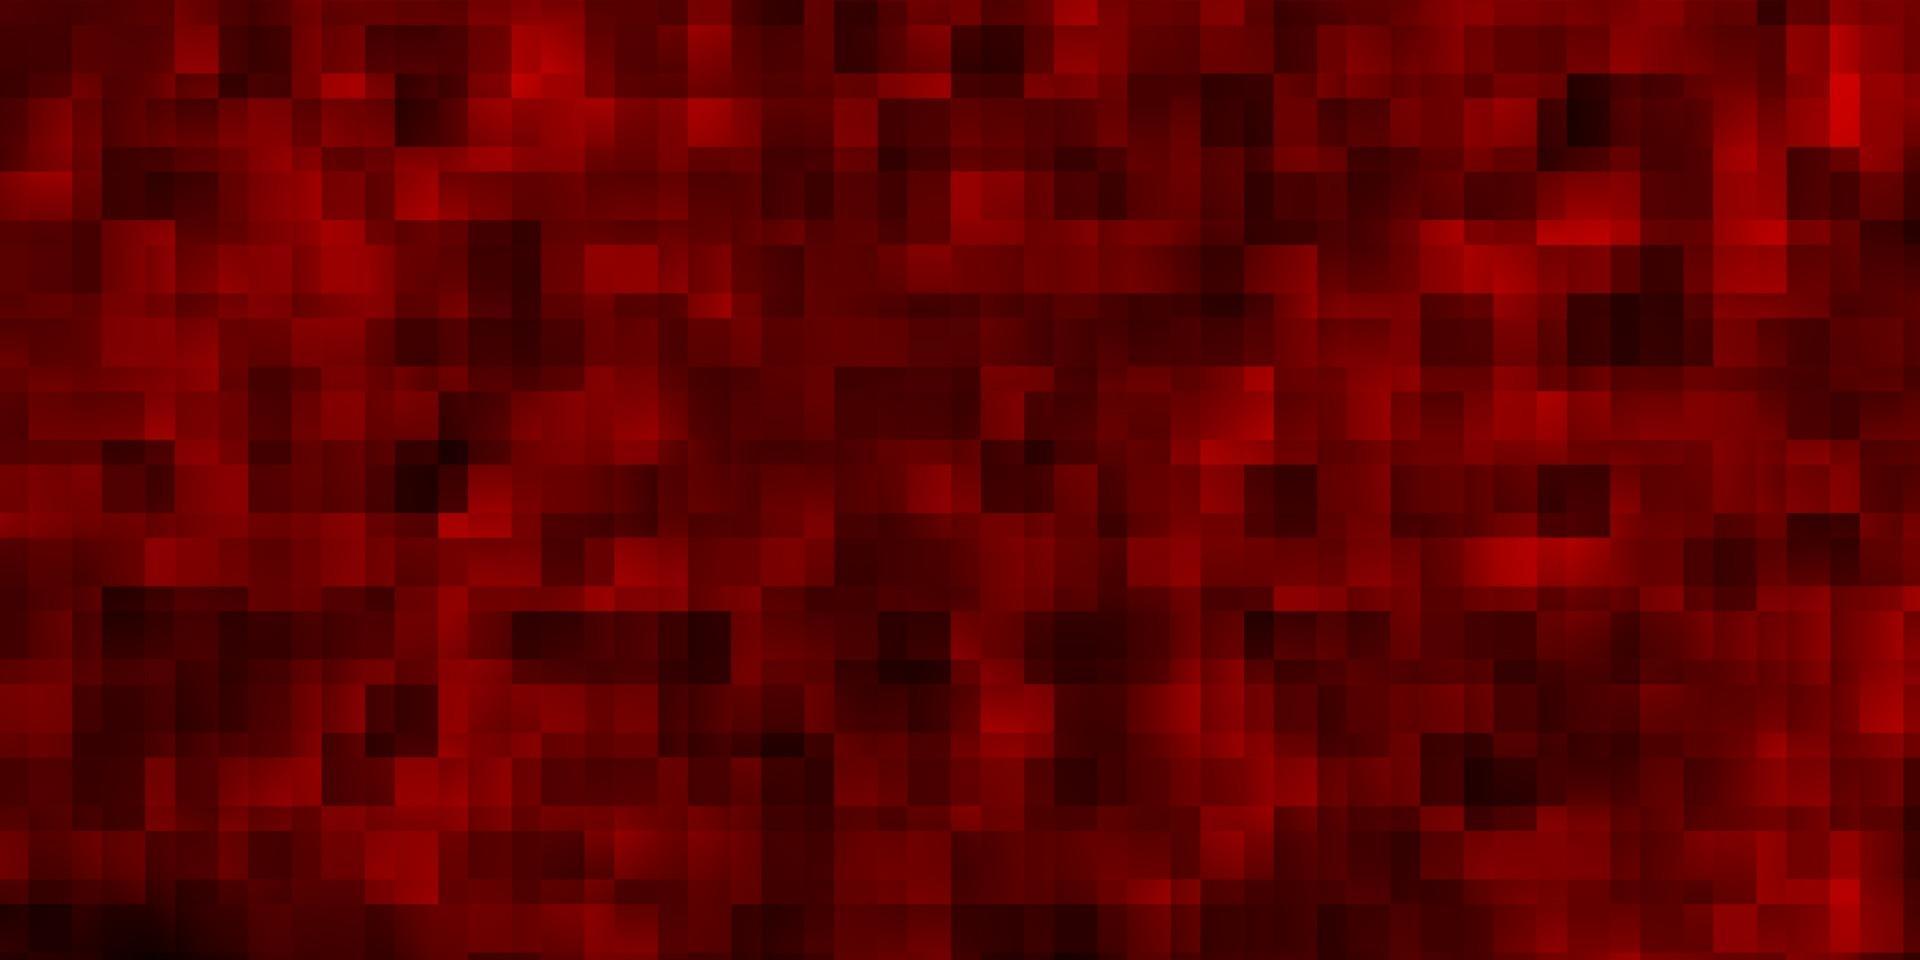 modelo de vetor vermelho escuro com retângulos.